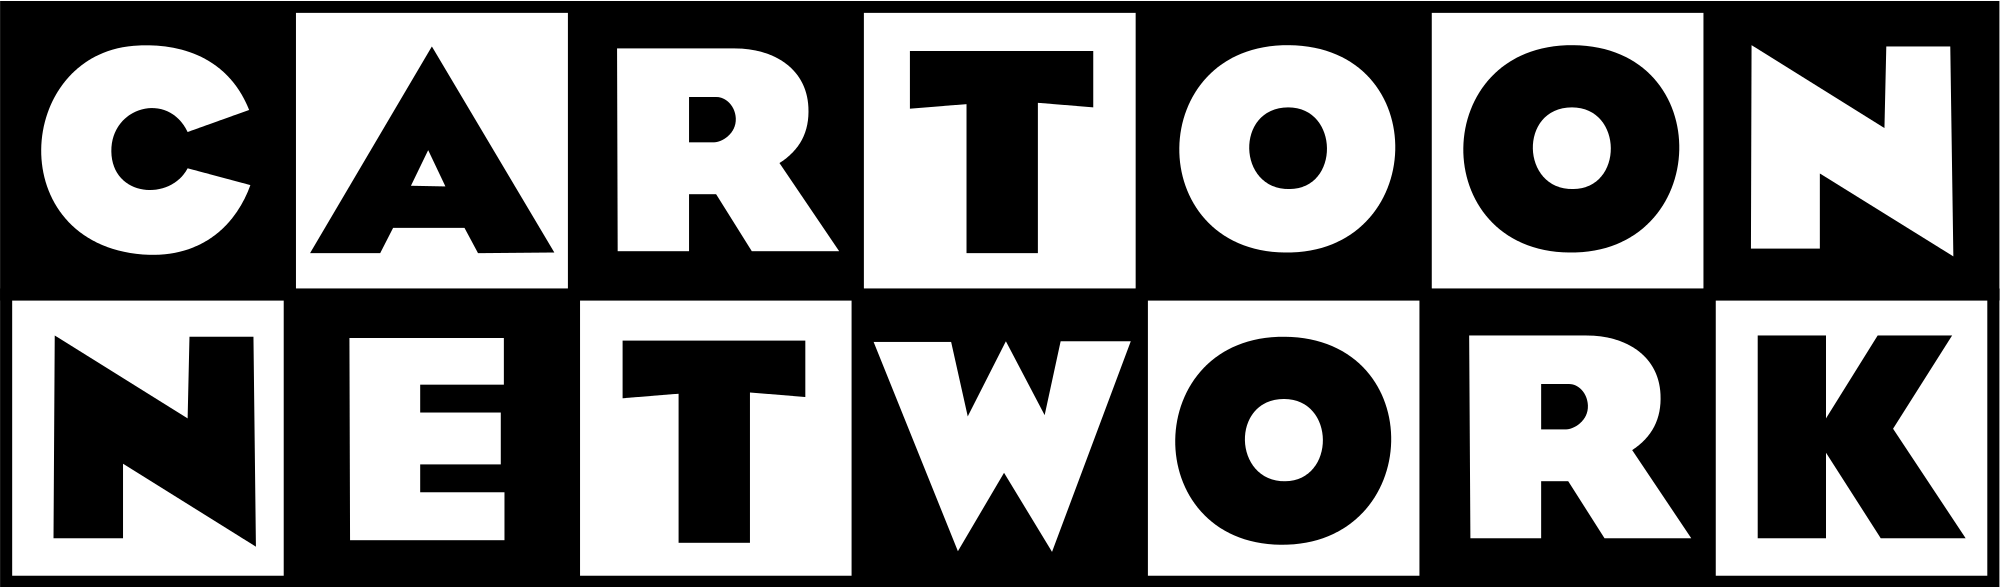 Cartoon Network Logo - Cartoon Network 1992 logo.svg